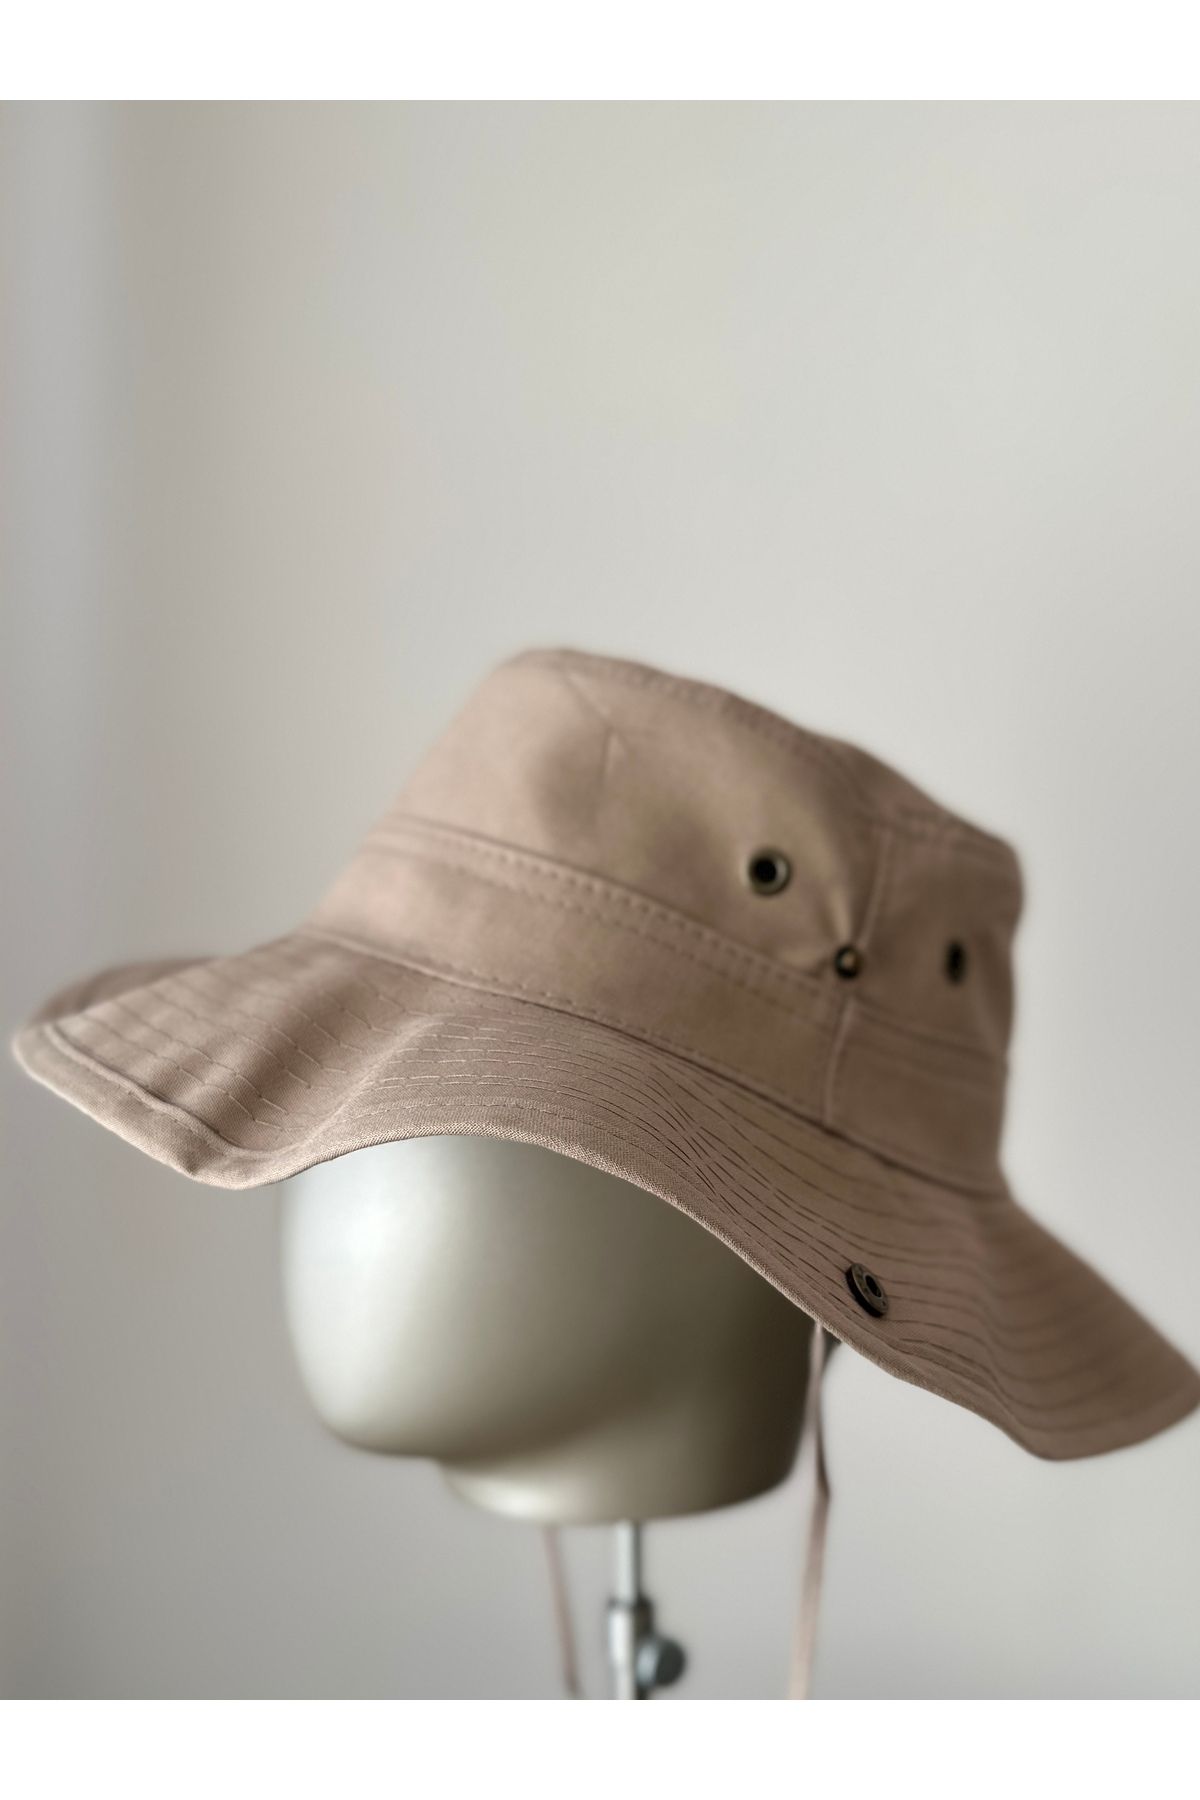 Amor Center Unisex Yazlık Safari Kovboy Katlanabilir Şapka Havalandırma Delikli Keten/Pamuk